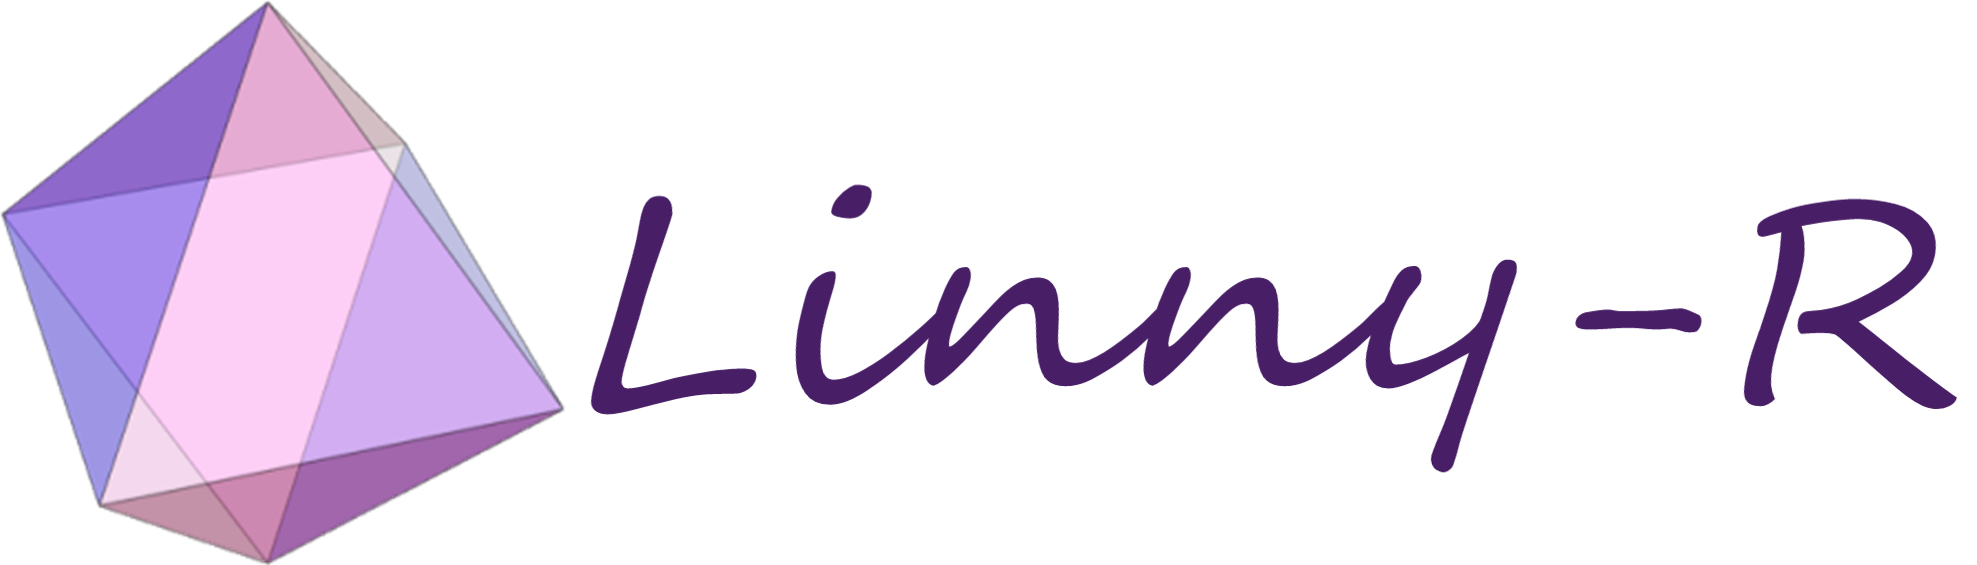 Linny-R